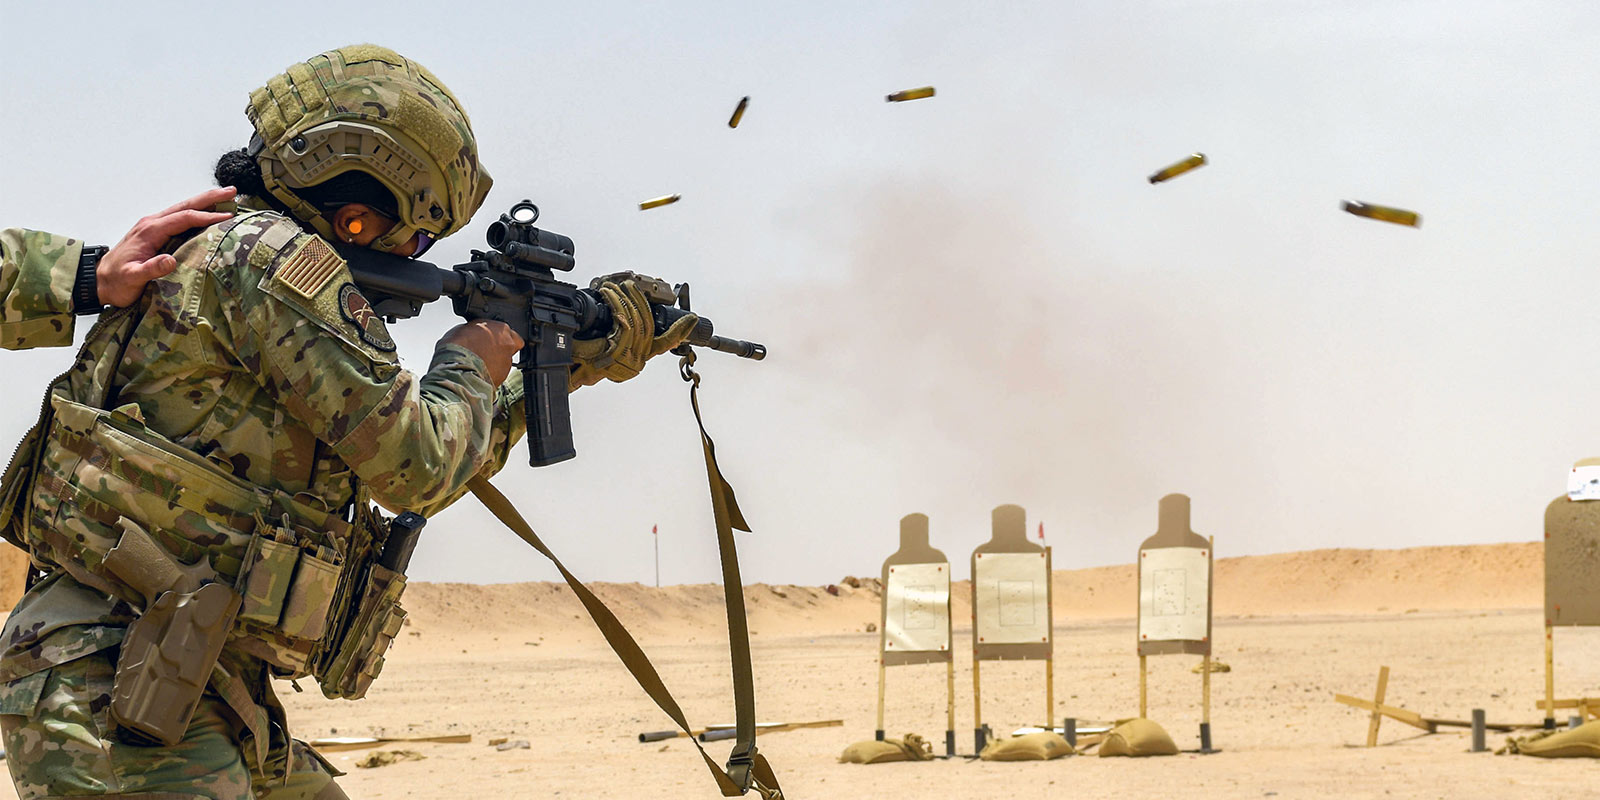 Airman firing a M4 Carbine Assault Rifle